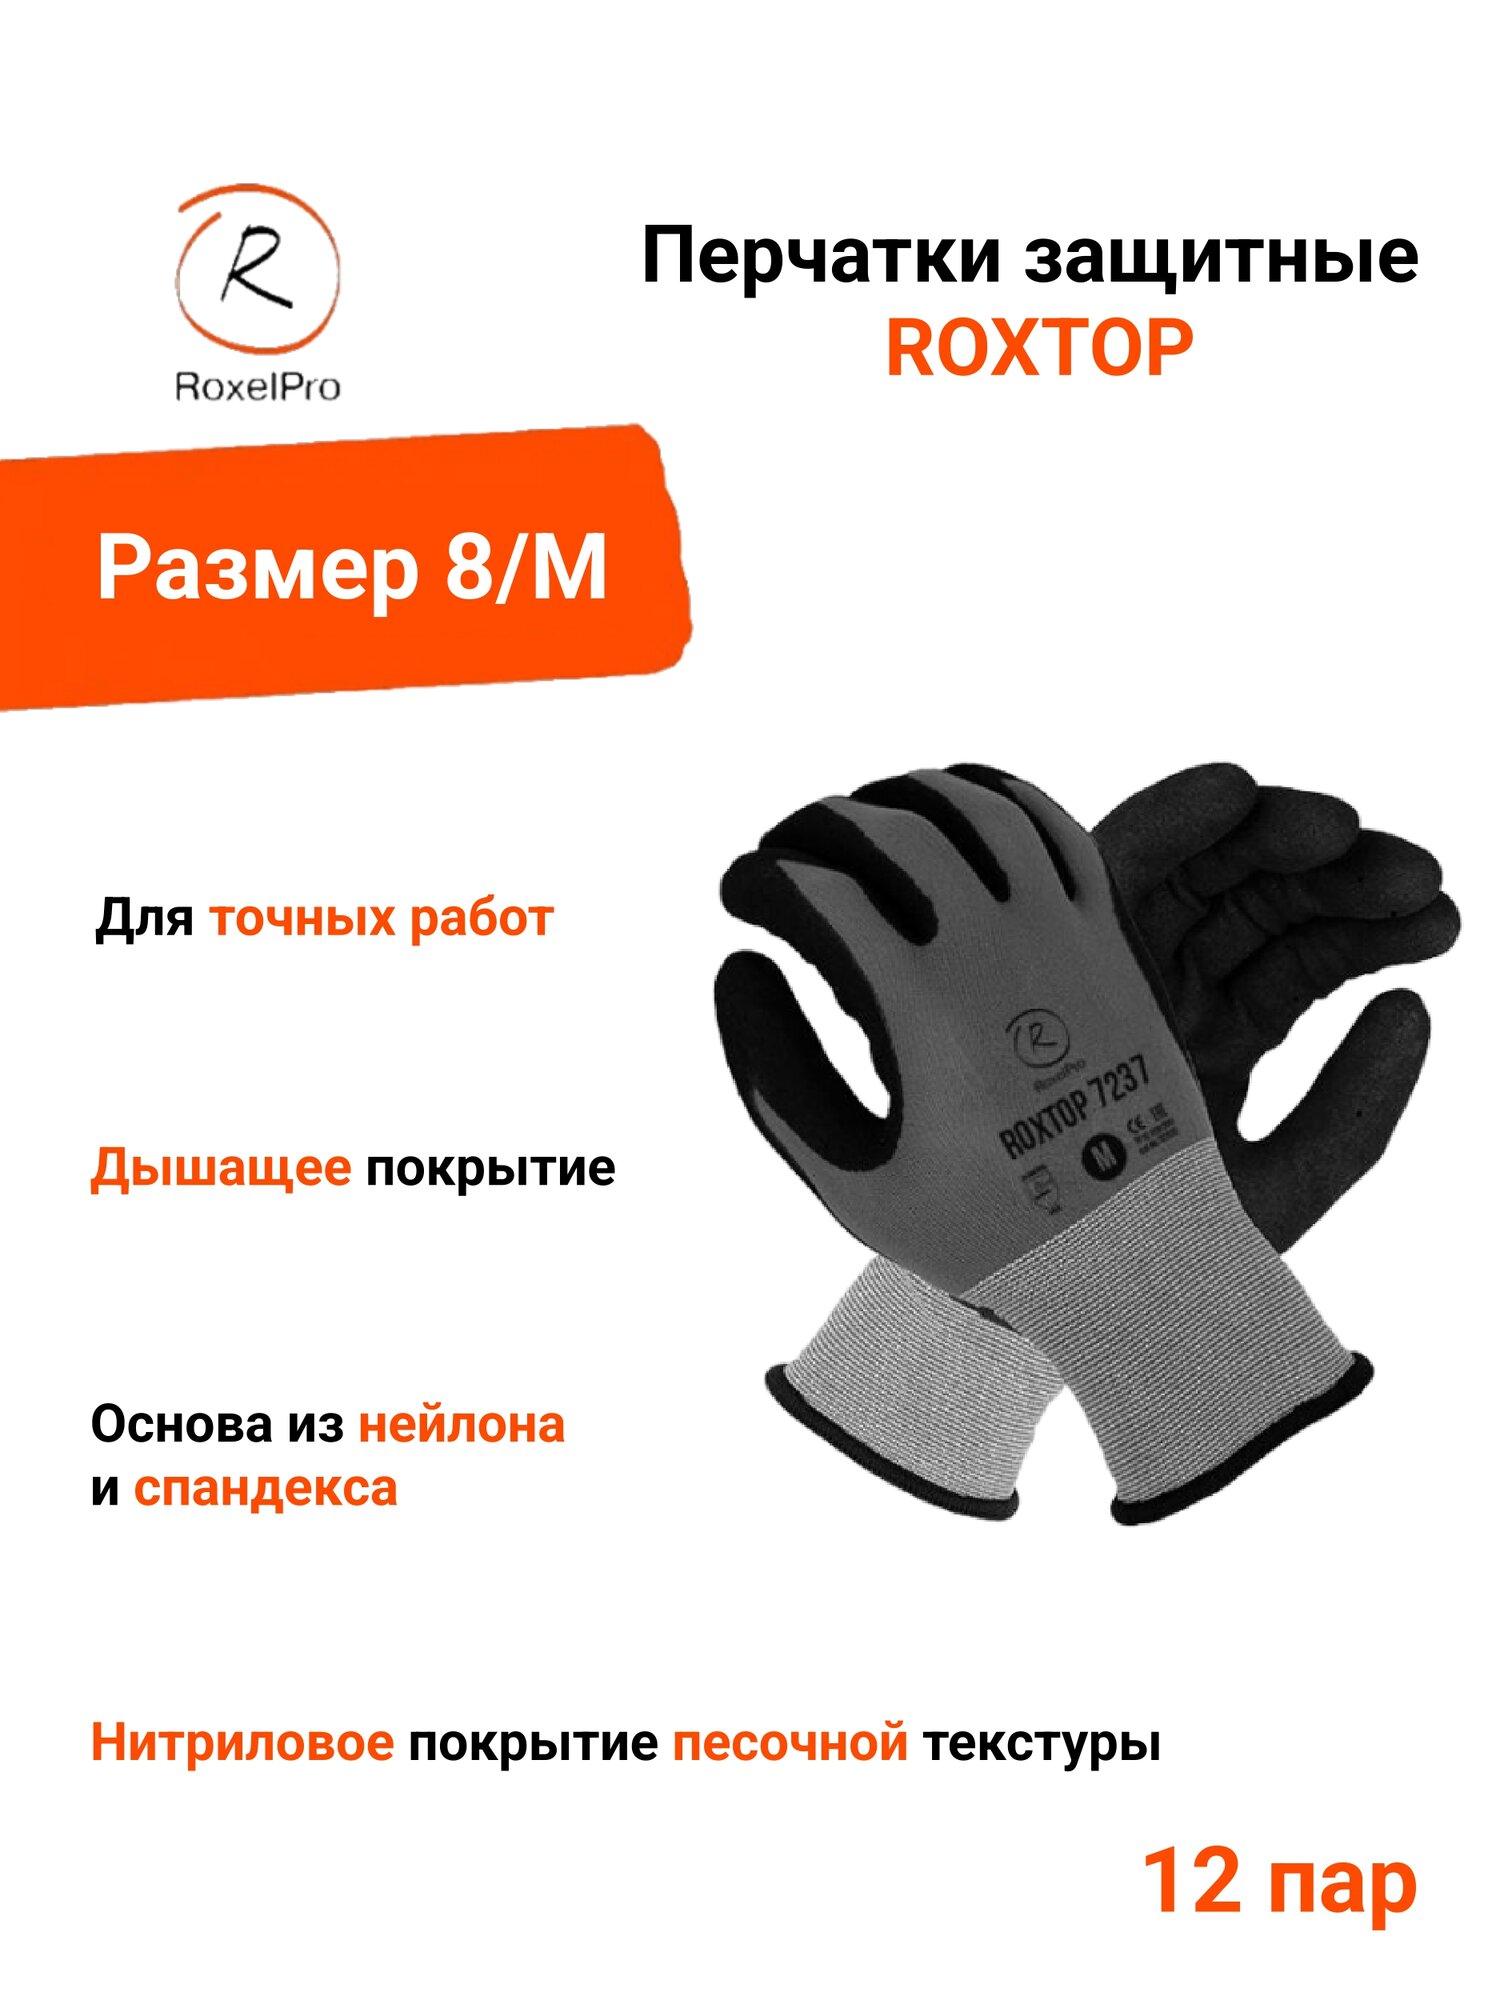 RoxelPro Перчатки защитные ROXTOP 7237 с нитриловым покрытием ладони песочной текстуры, размер 8/M, 1 пара